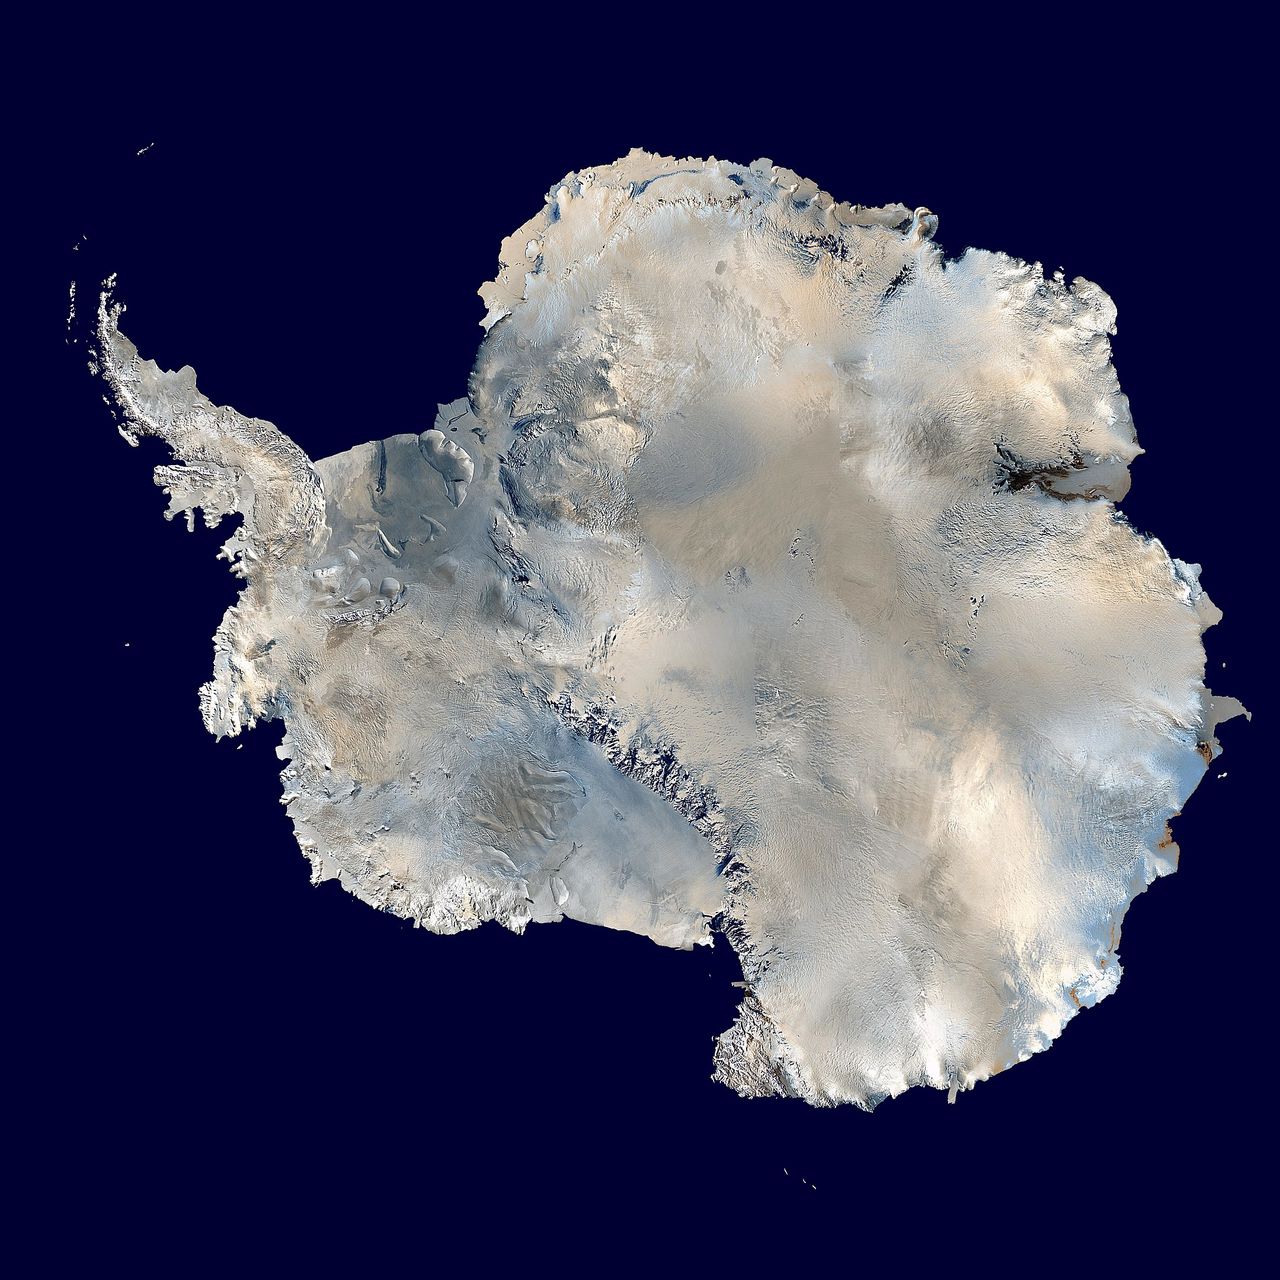 Zdjęcie satelitarne Antarktydy